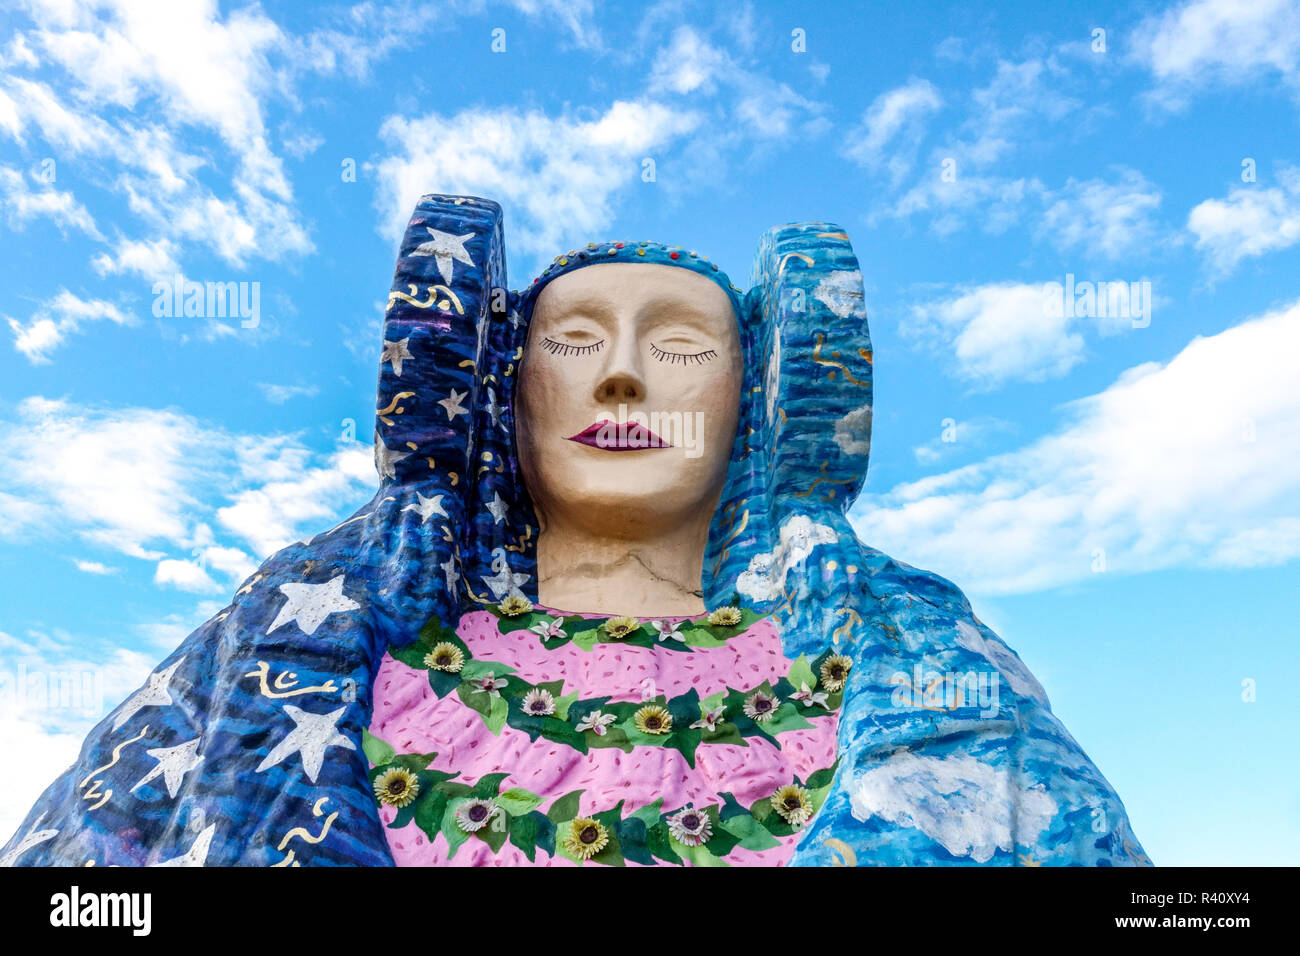 Elche, verträumte Dame von Elche, bunte Statue in der Nähe von Alicante-Elche Flughafen Spanien Stockfoto